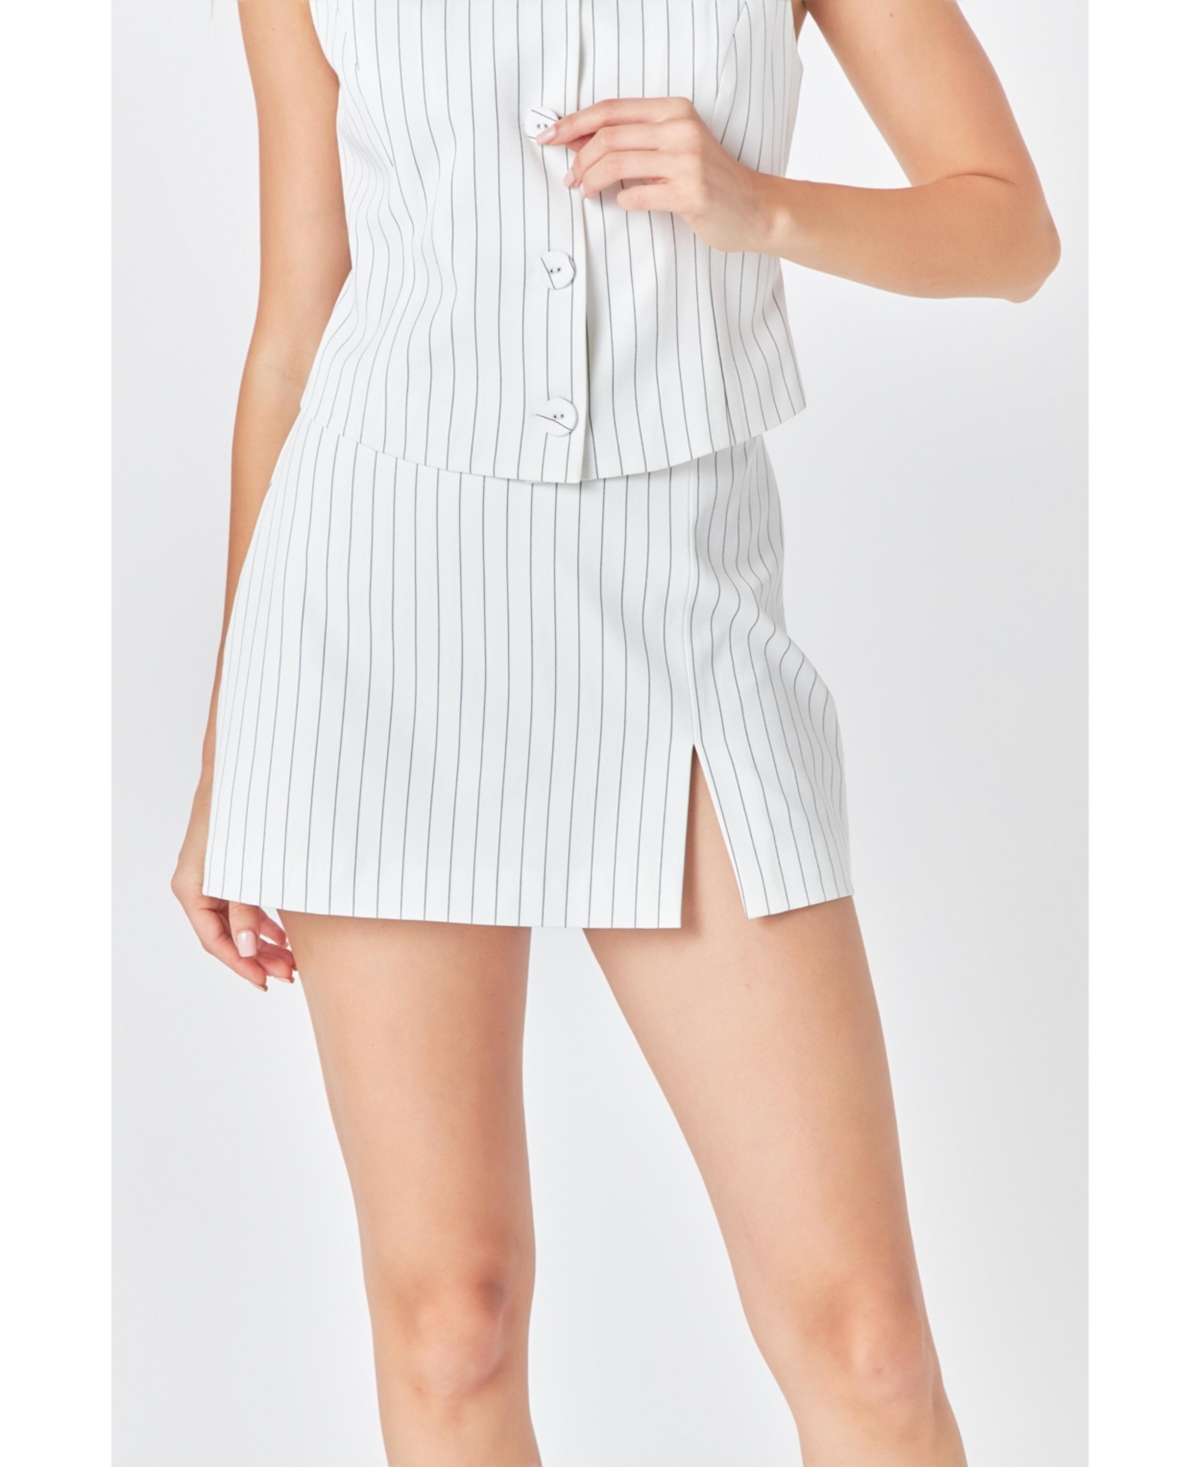 Women's Stripe Skort - White/black